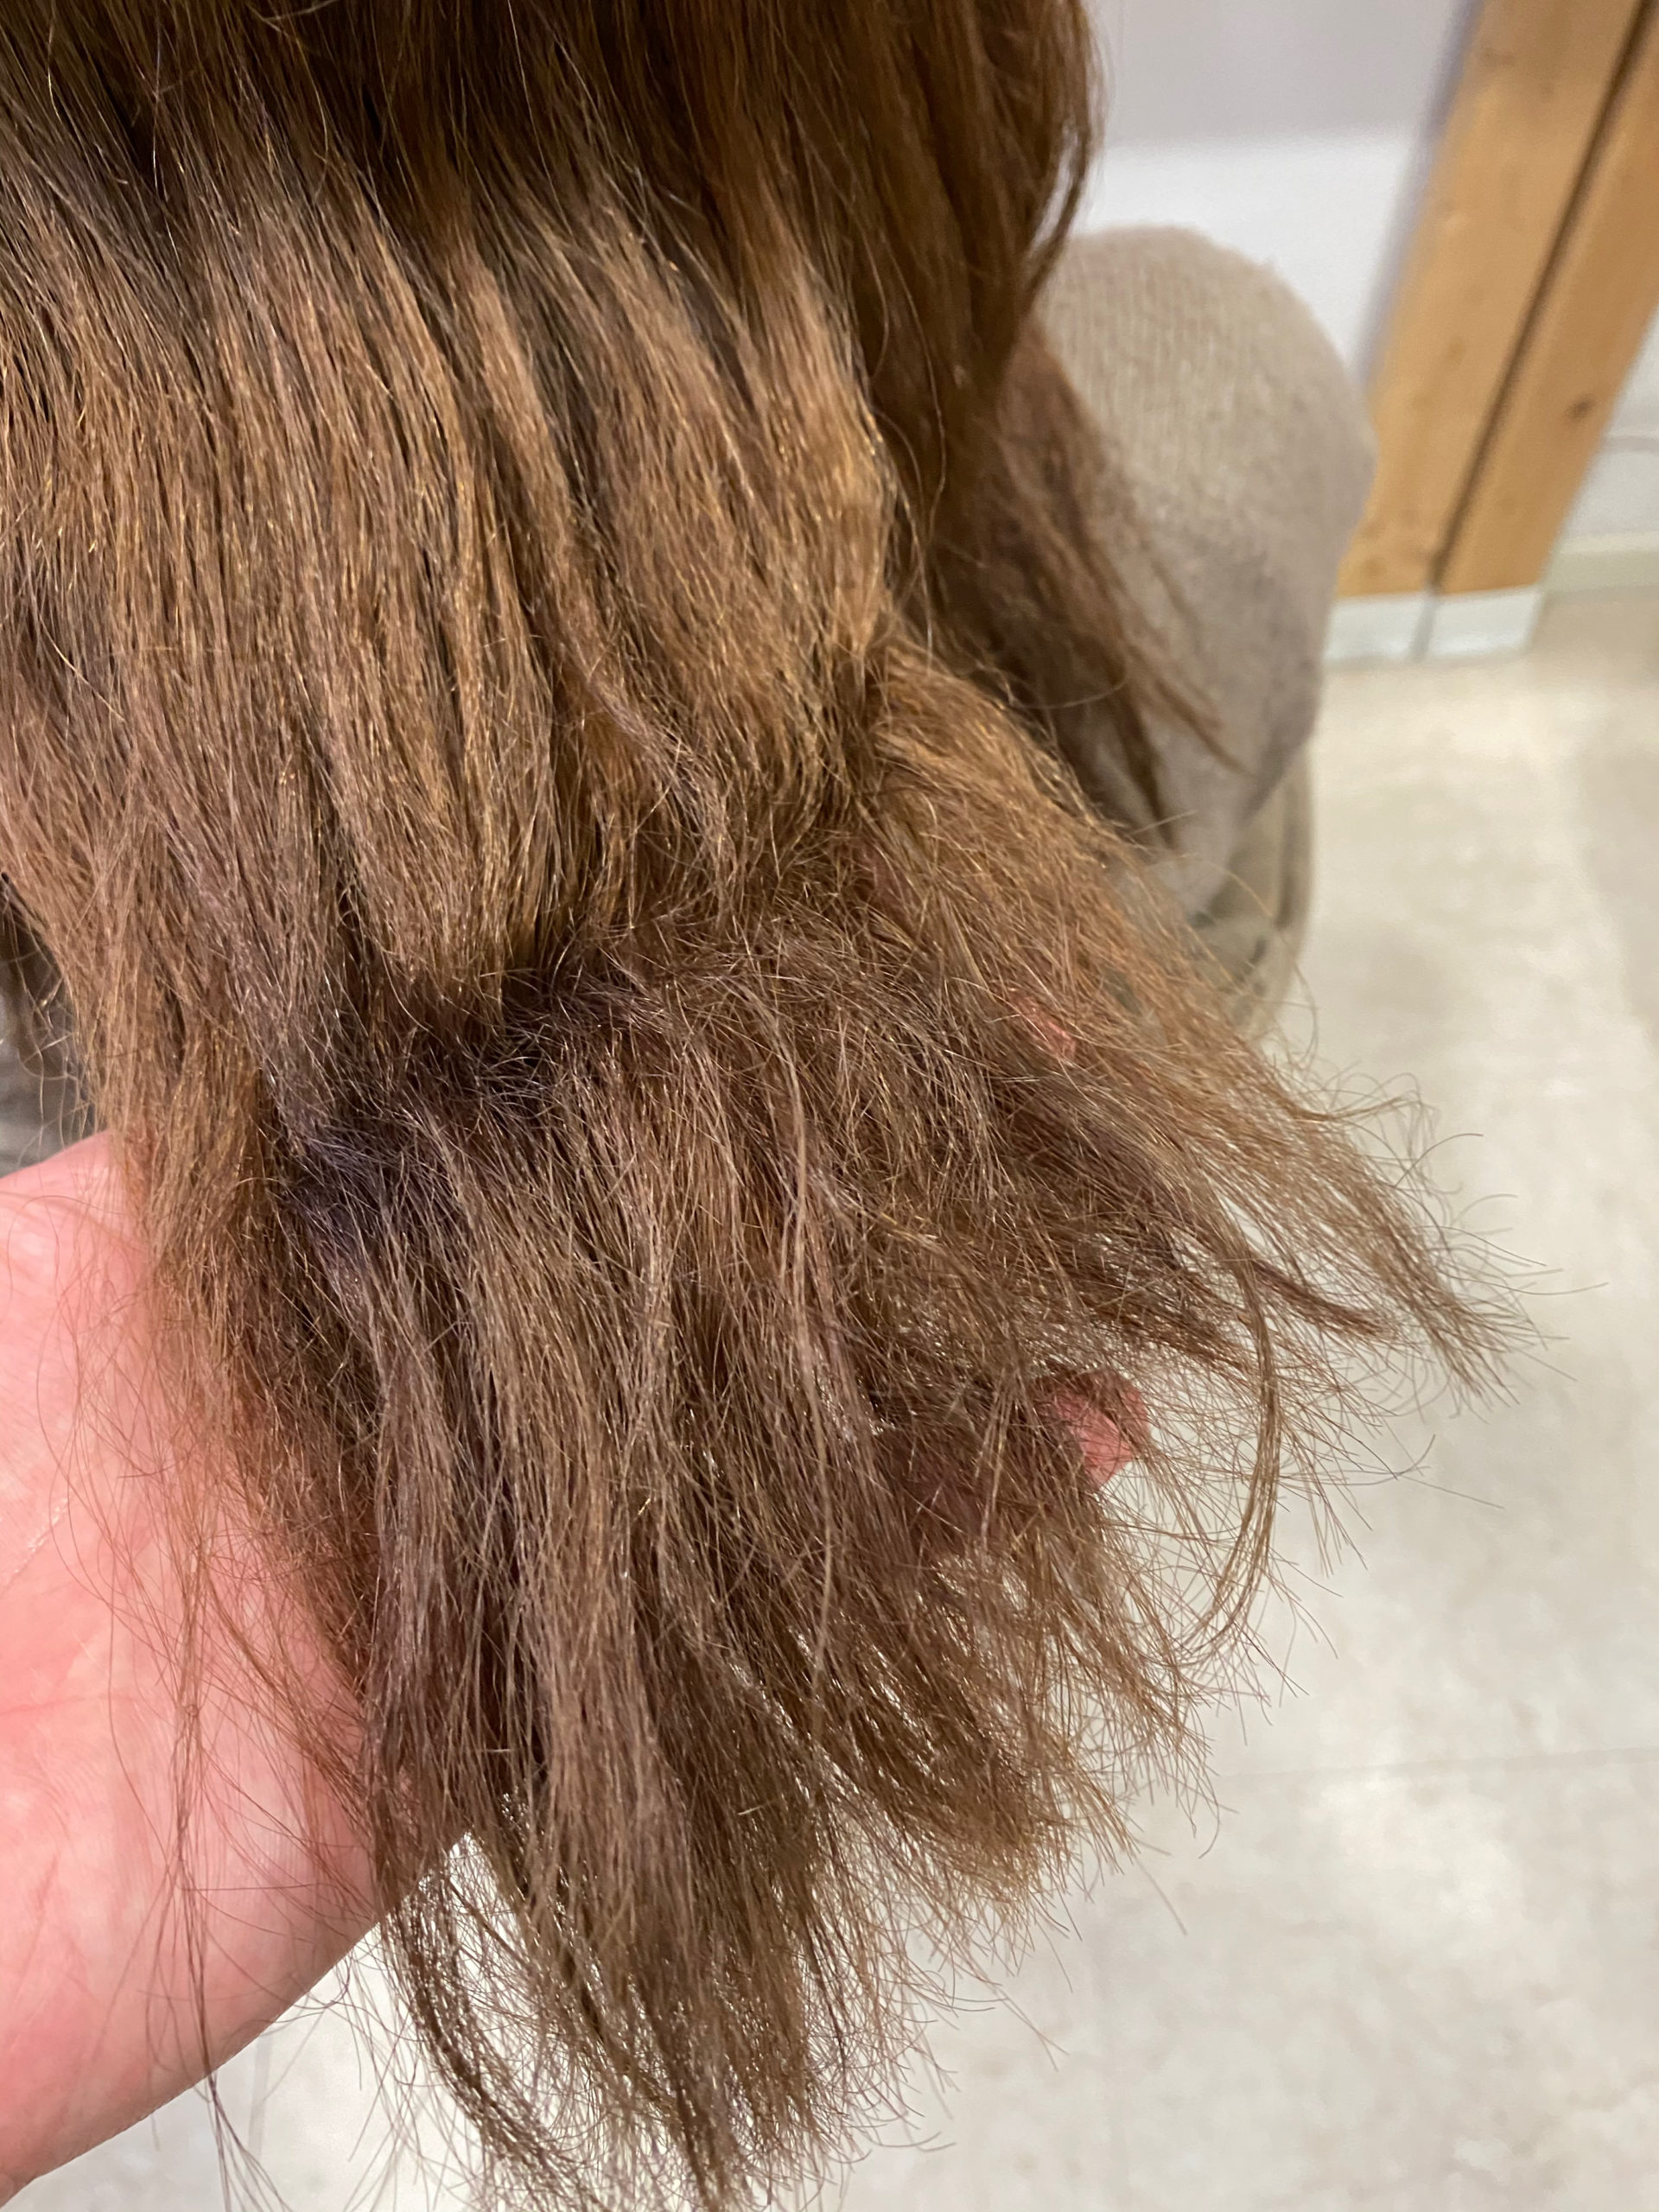 パーマで失敗、髪がチリチリに。。【ビビリ矯正】で艶髪に変身。原宿・表参道『髪のお悩みを解決するヘアケア美容師の挑戦』